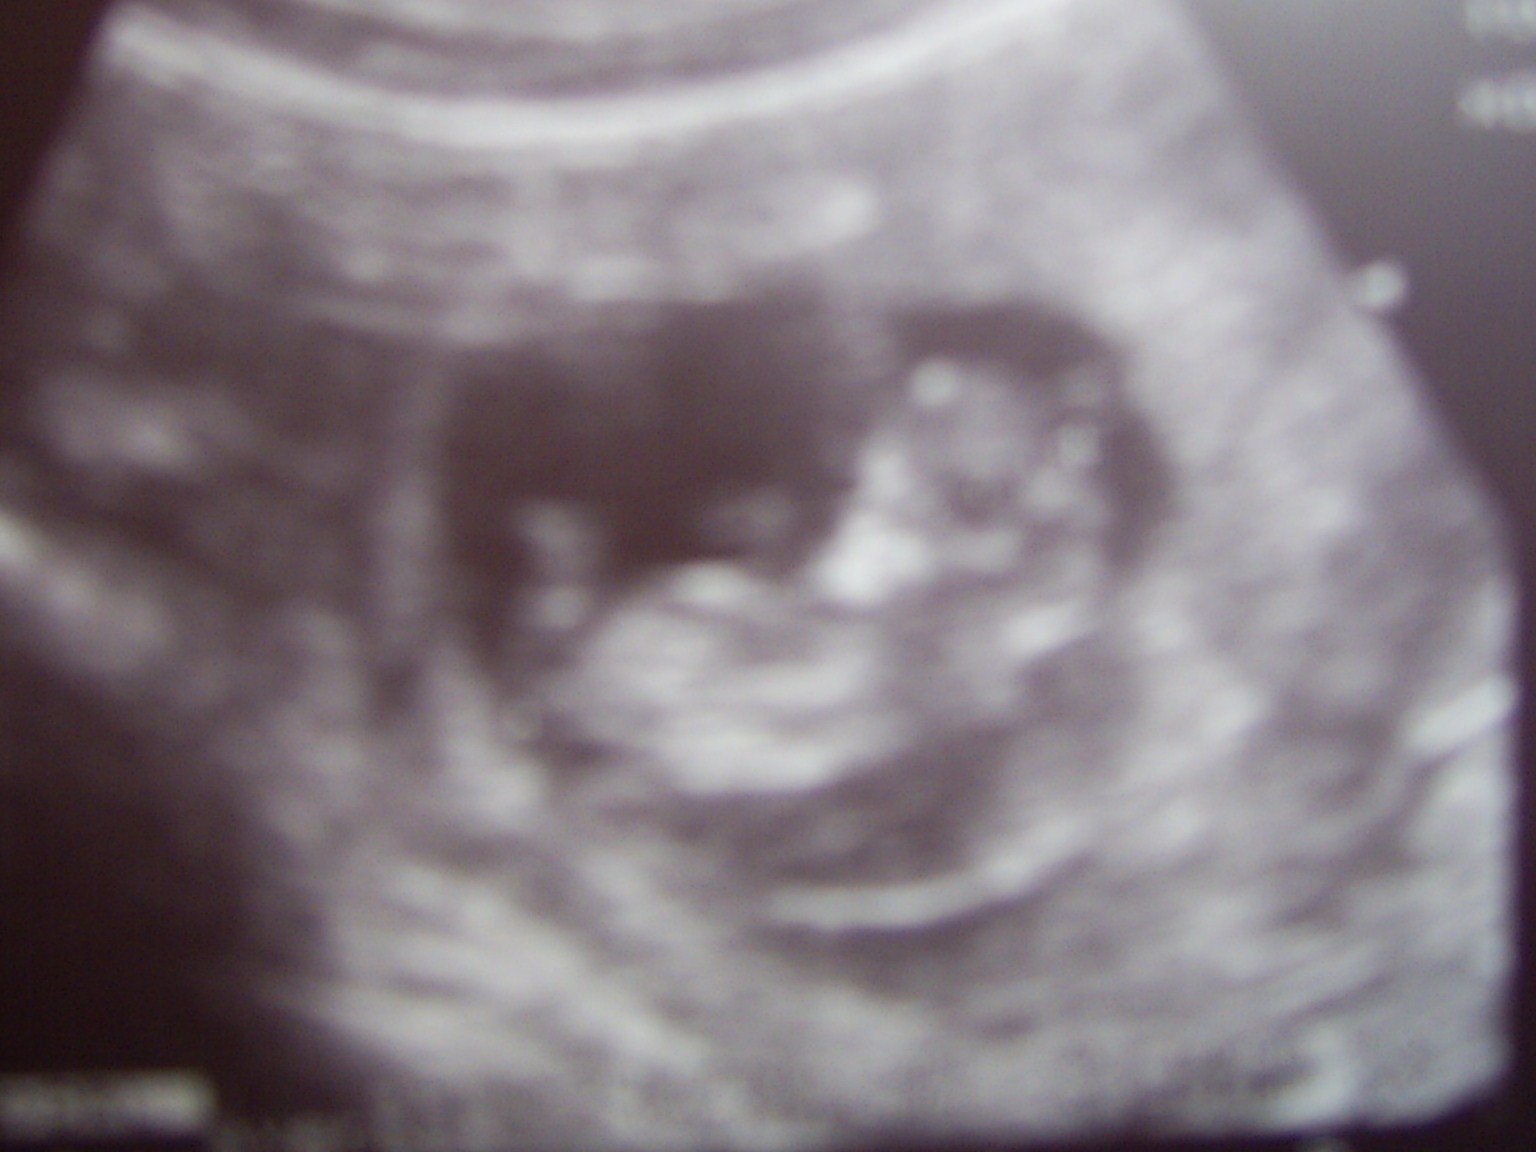 Плод 11 недель фото. Плод на 11 неделе беременности. Ребёнок на 11 неделе беременности. УЗИ 11 недель беременности.